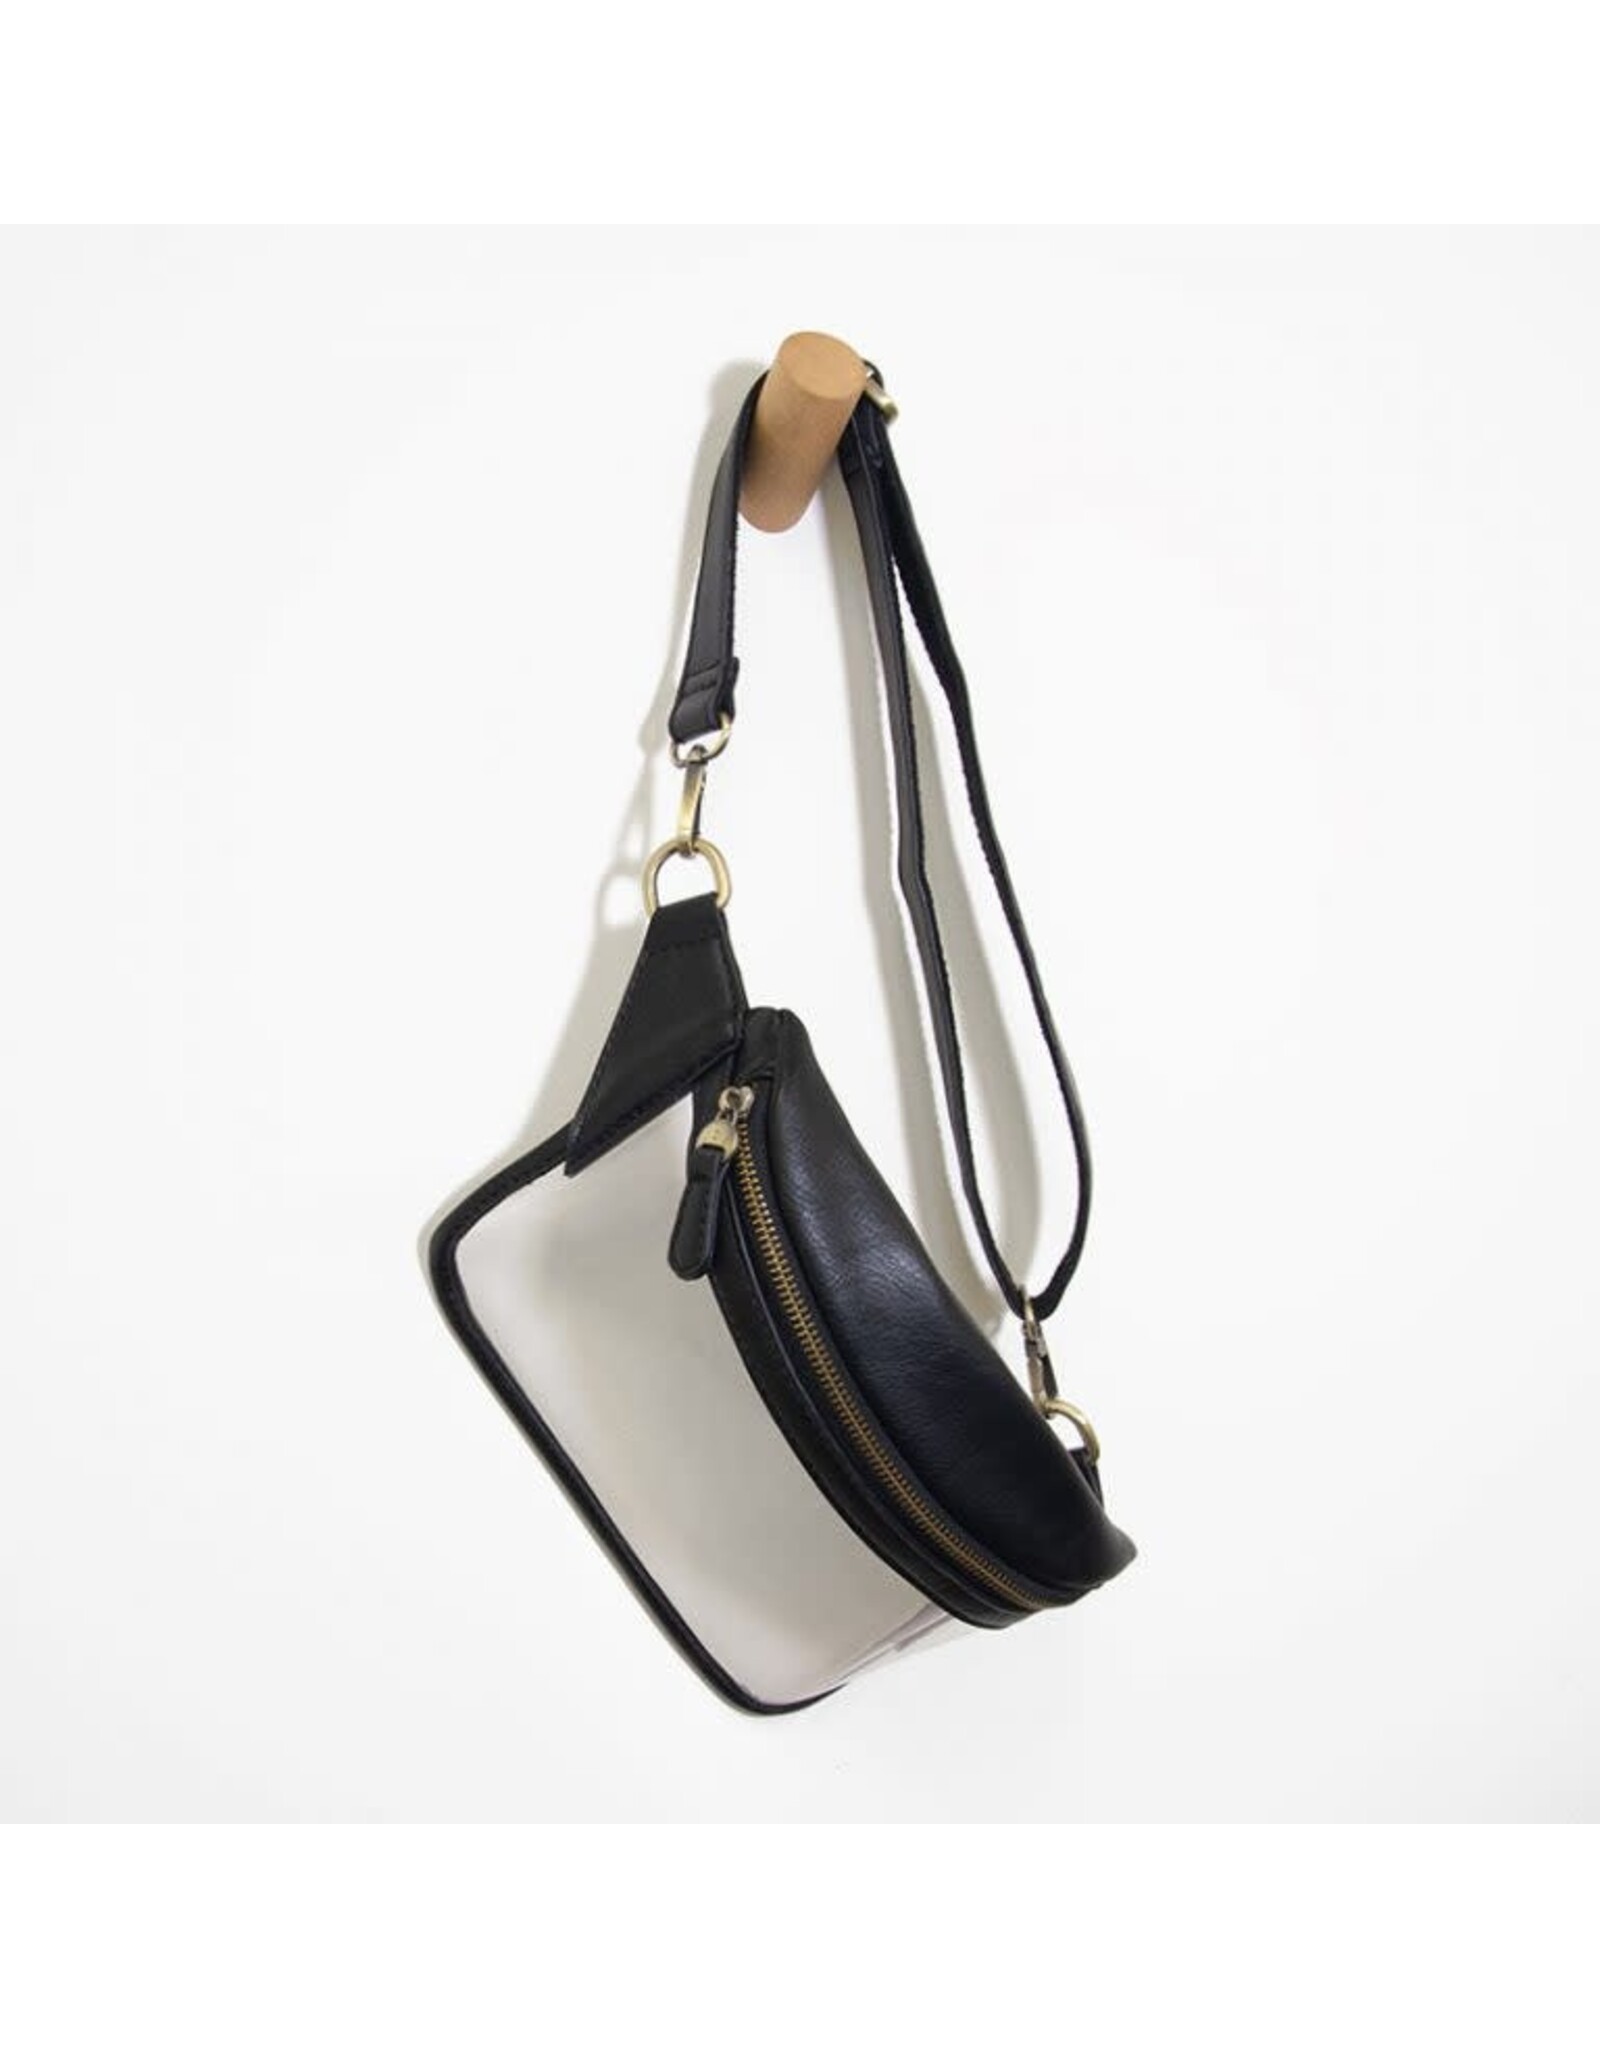 Clare V. Leather Belt Bag in Black